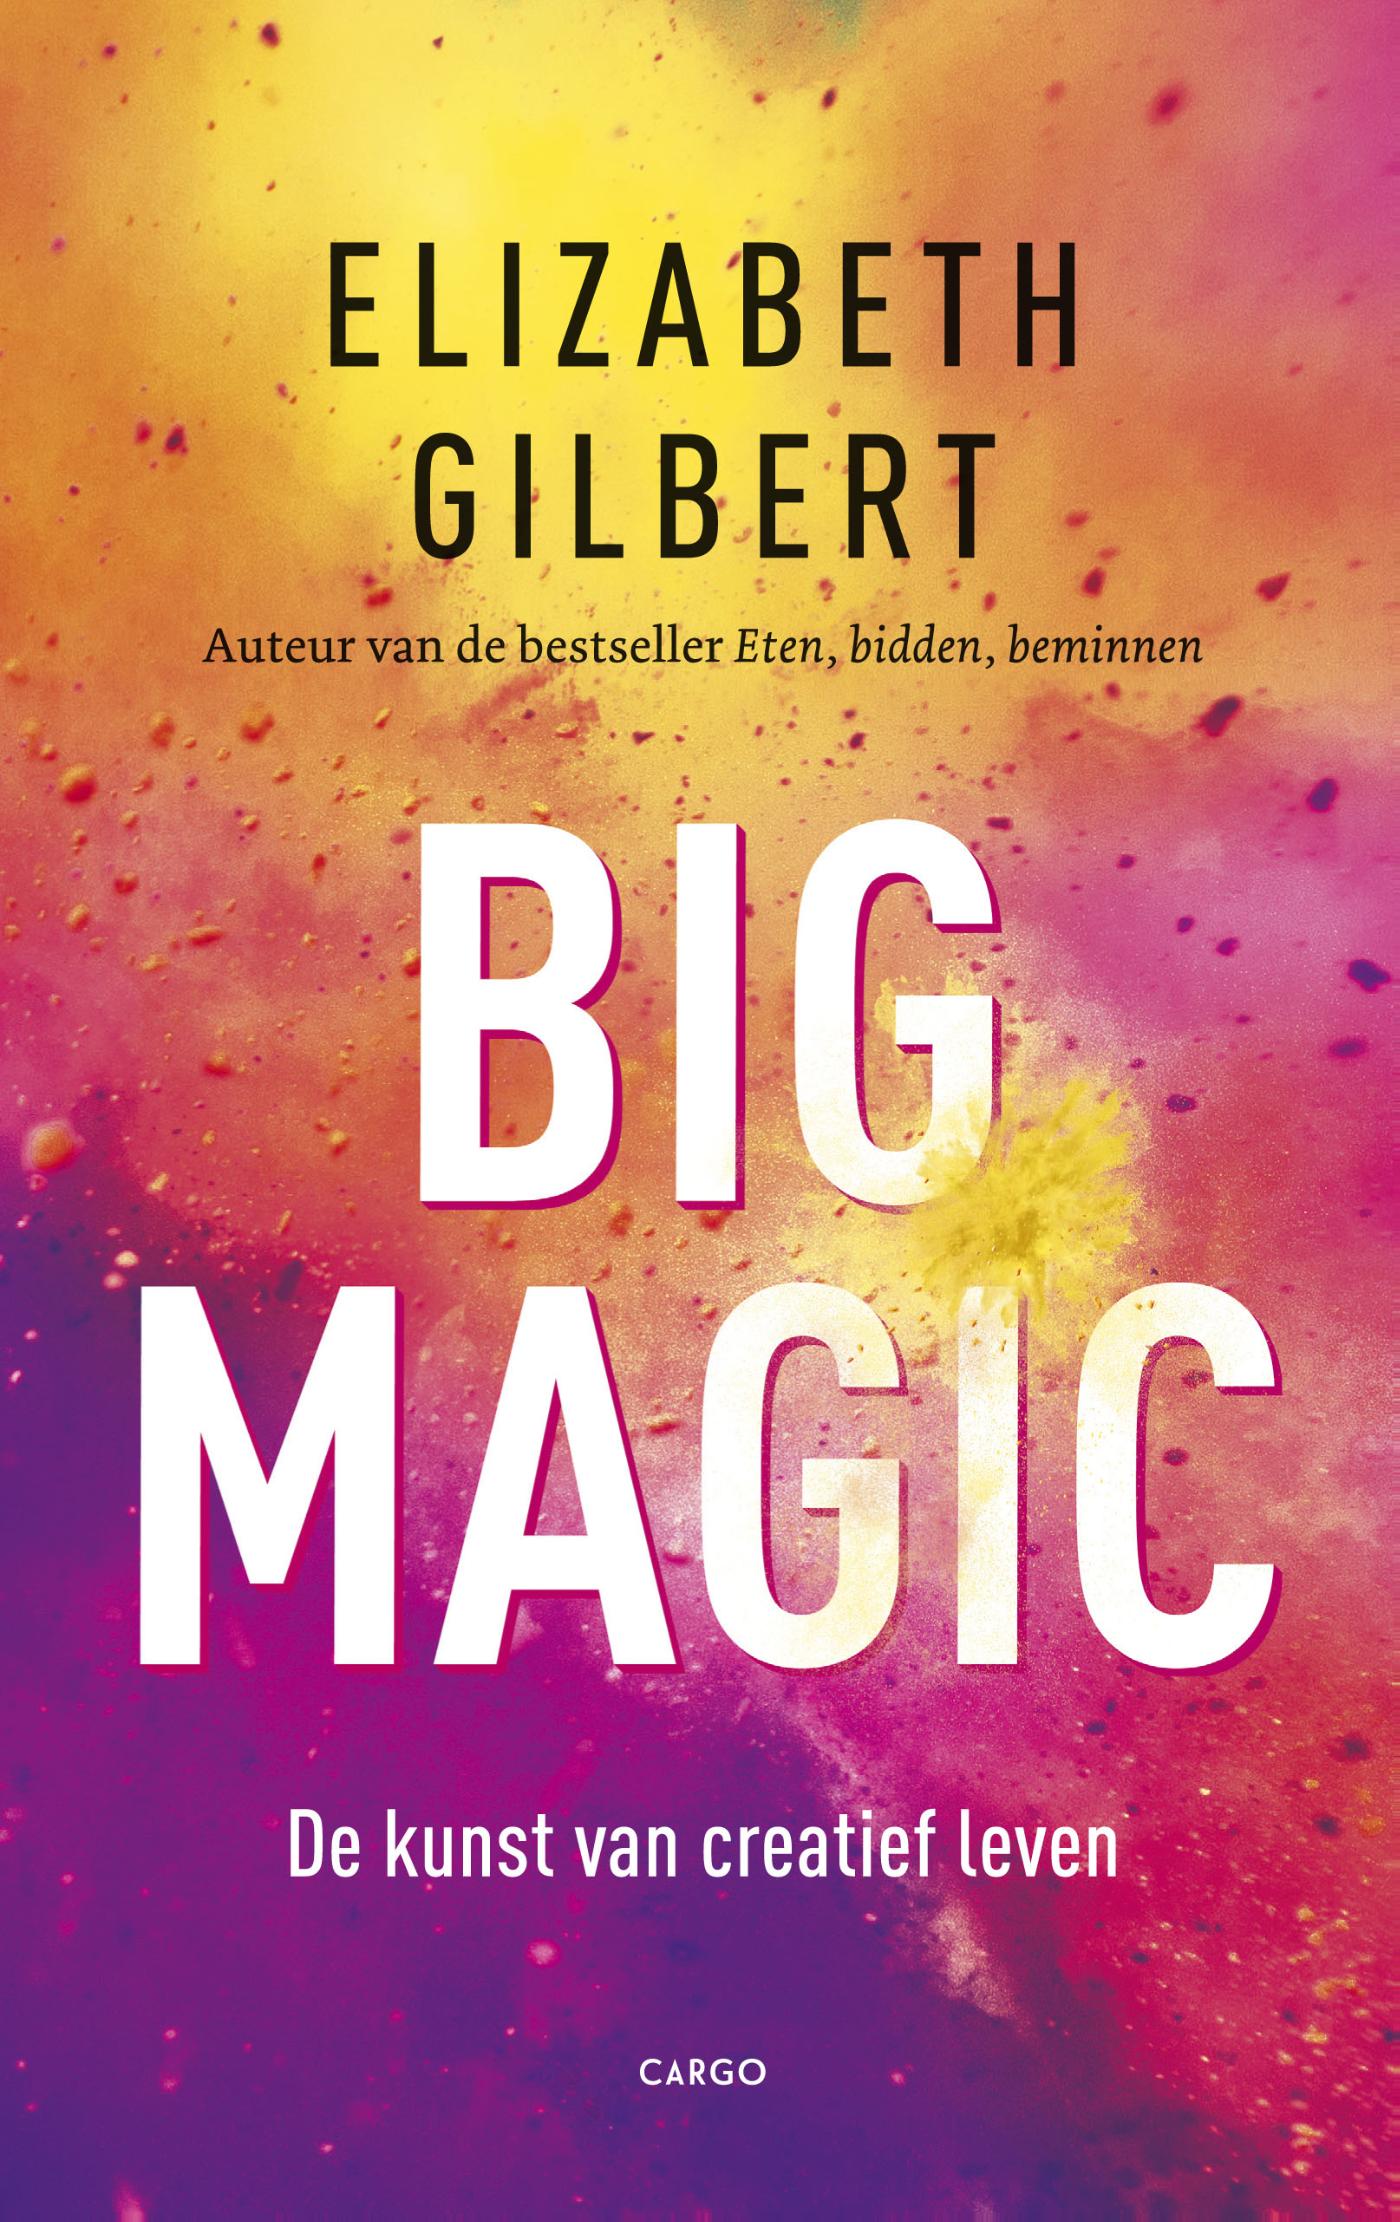 Big magic (Ebook)